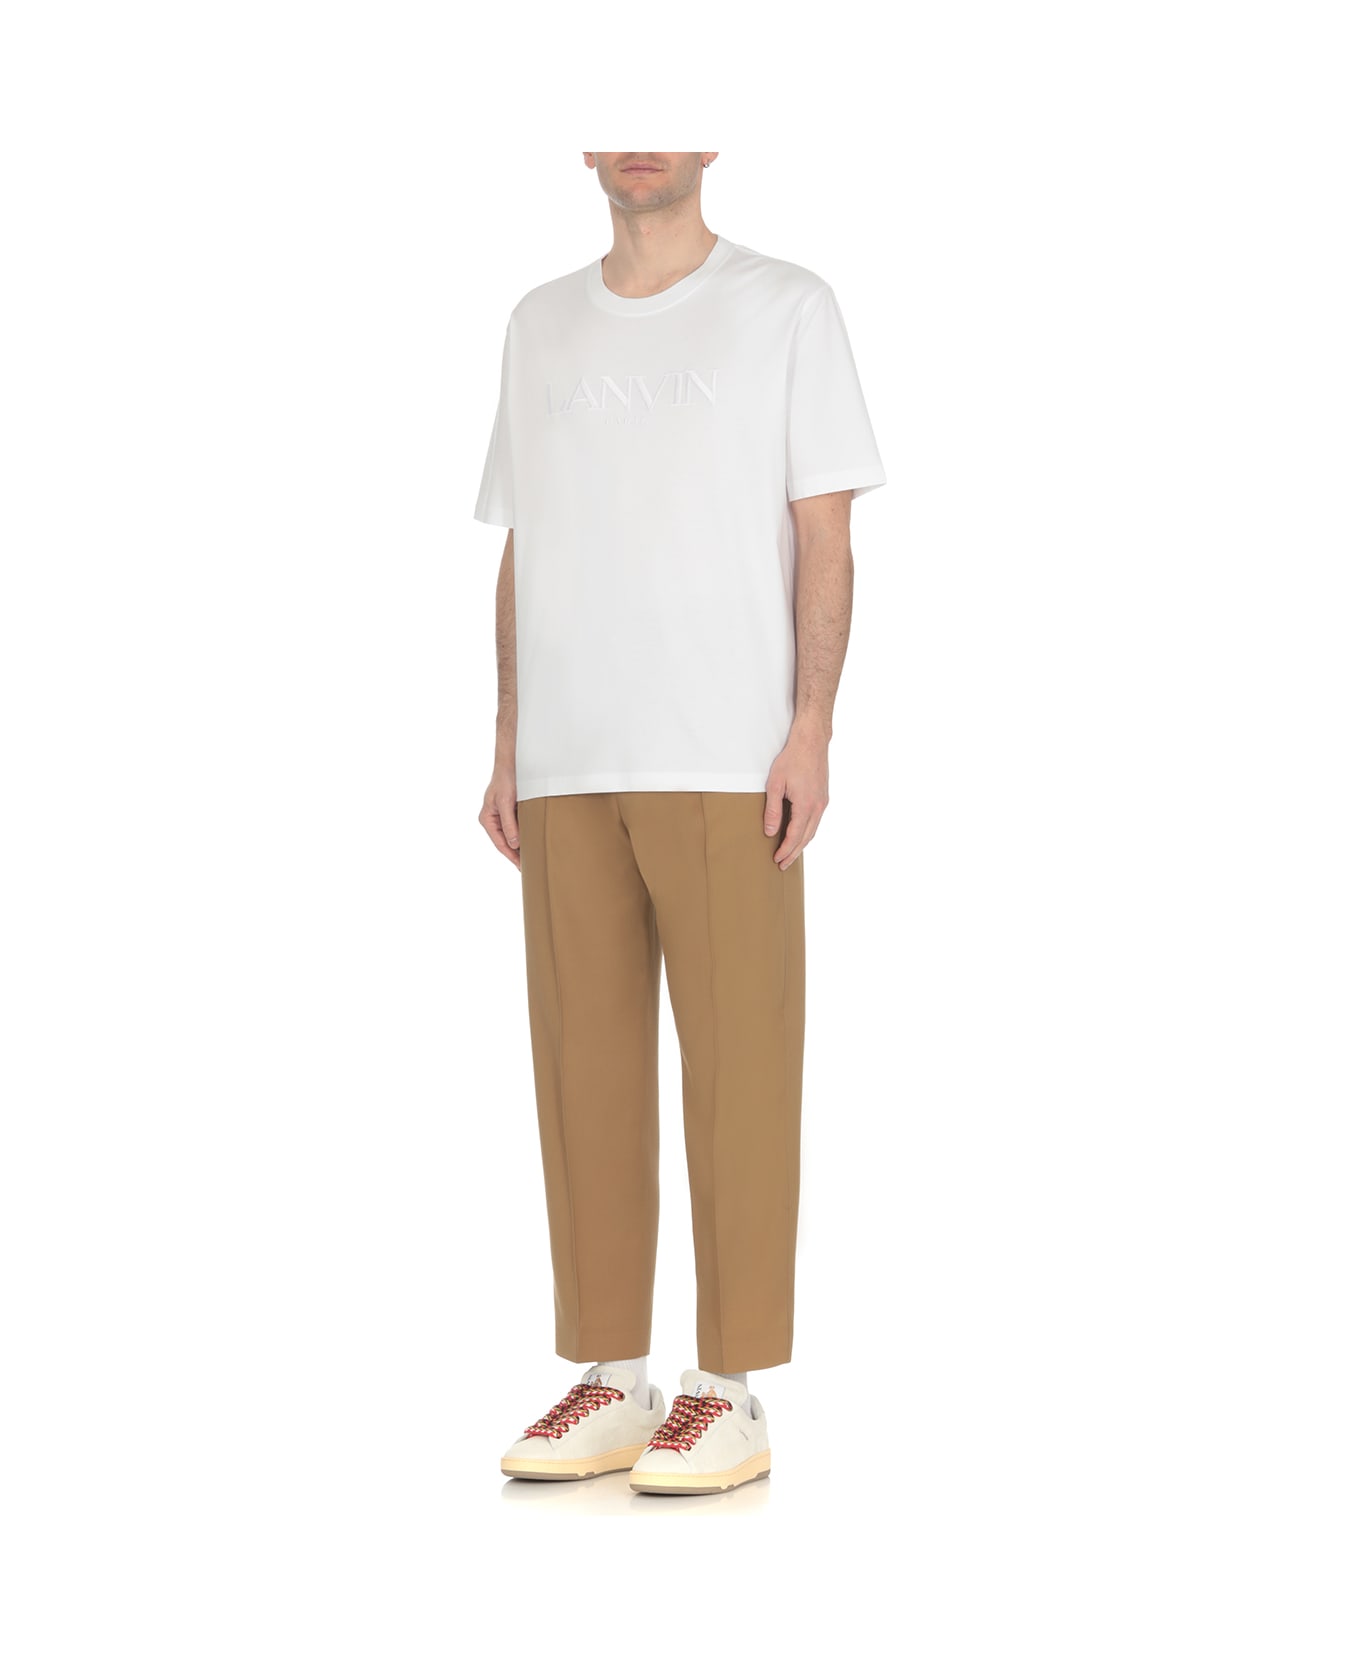 Lanvin Cotton T-shirt - White シャツ